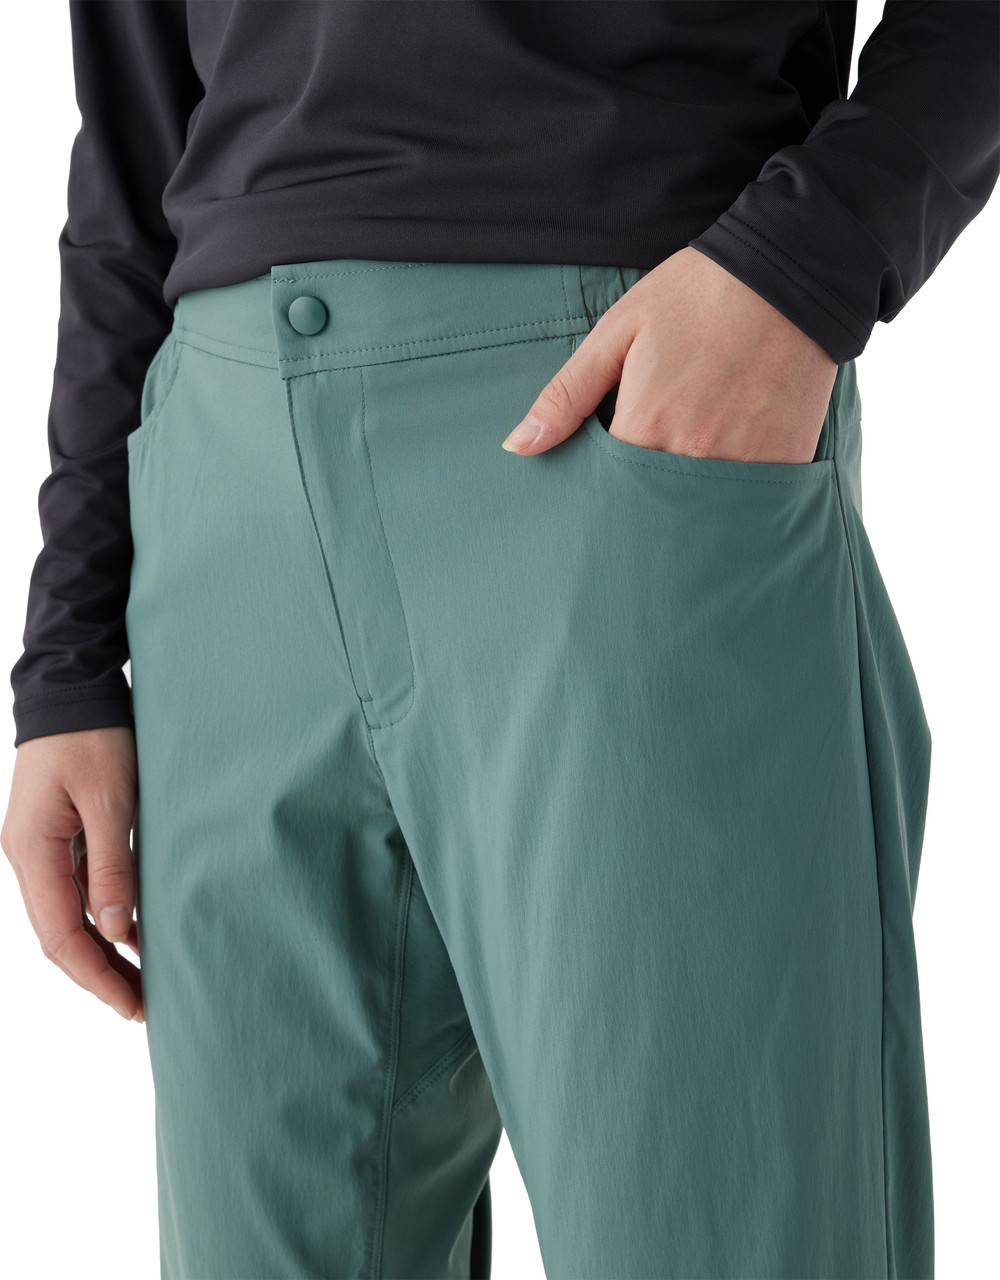 🔵 2/$15 Tek Gear Pocketed Warm-up Pants Size Med